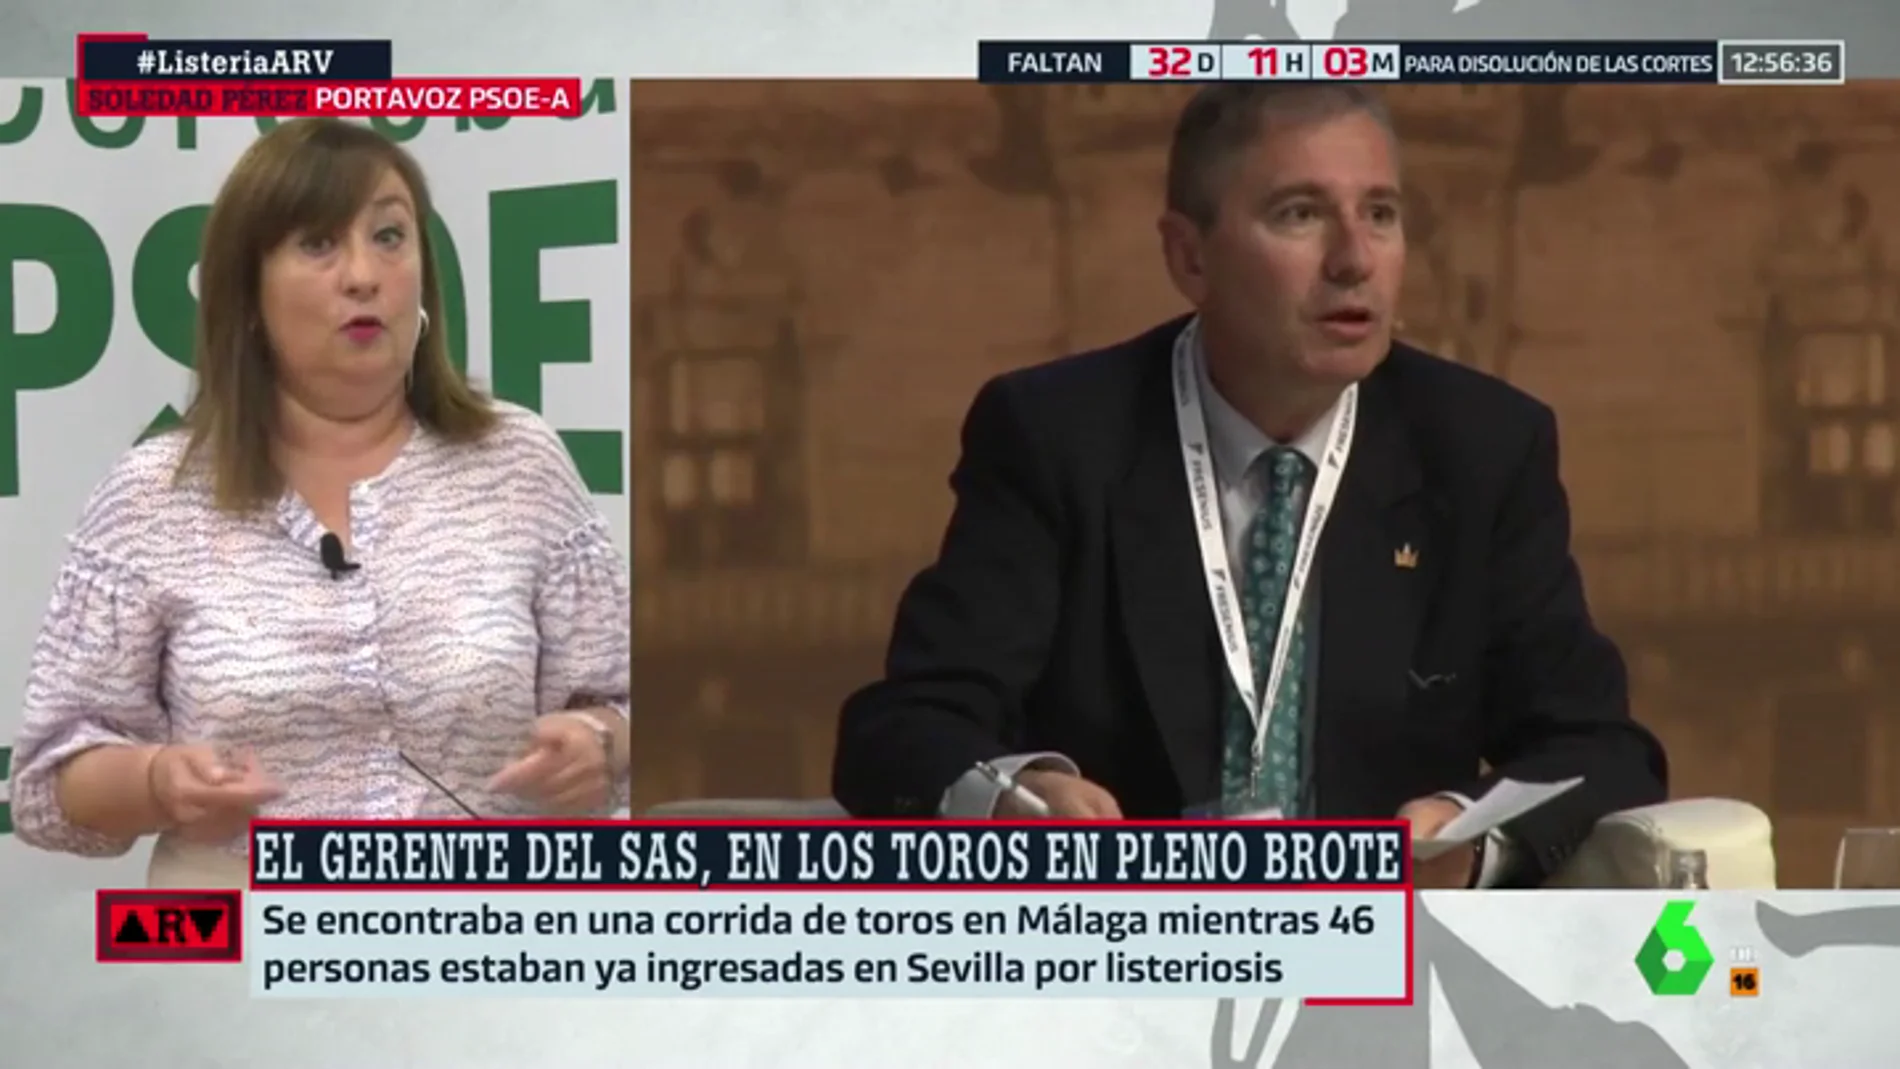 El PSOE andaluz critica la gestión del PP con el brote de listeriosis: "Hay una falta de humanidad de los que gobiernan en Andalucía"